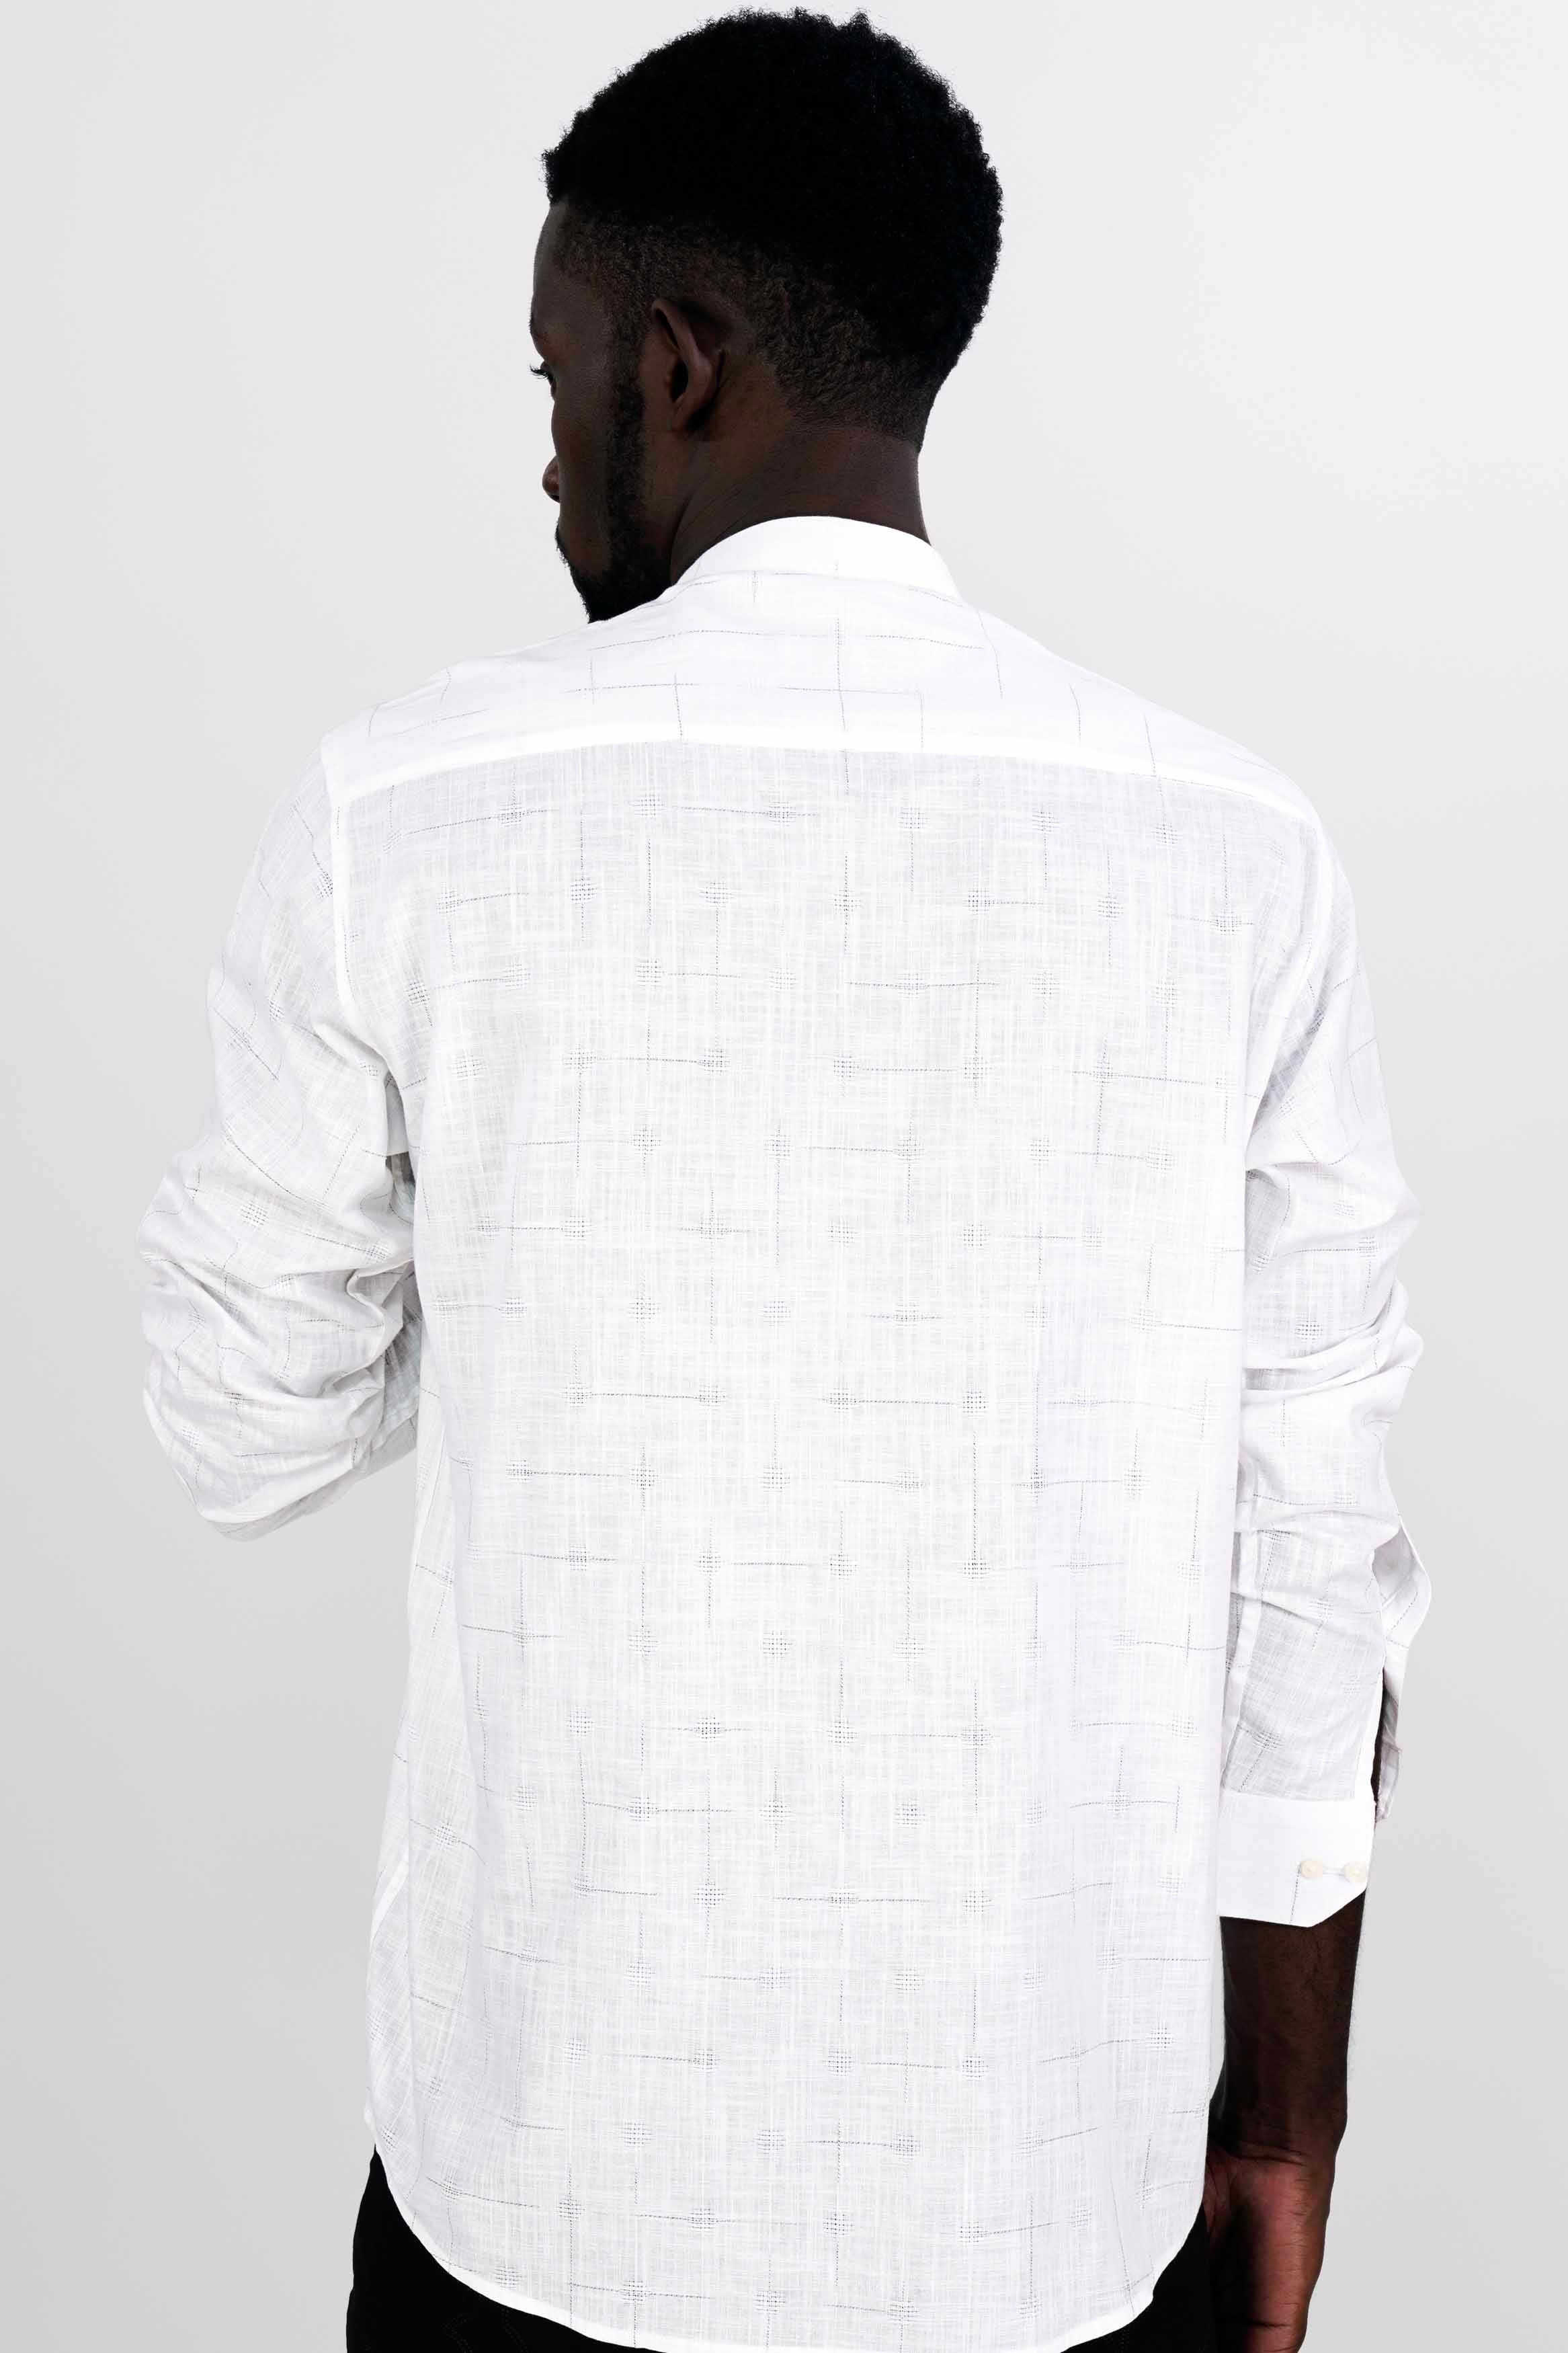 Bright White Subtle Checkered Signature Patchwork Dobby Premium Giza Cotton Designer Shirt 6132-M-E160-38, 6132-M-E160-H-38, 6132-M-E160-39, 6132-M-E160-H-39, 6132-M-E160-40, 6132-M-E160-H-40, 6132-M-E160-42, 6132-M-E160-H-42, 6132-M-E160-44, 6132-M-E160-H-44, 6132-M-E160-46, 6132-M-E160-H-46, 6132-M-E160-48, 6132-M-E160-H-48, 6132-M-E160-50, 6132-M-E160-H-50, 6132-M-E160-52, 6132-M-E160-H-52